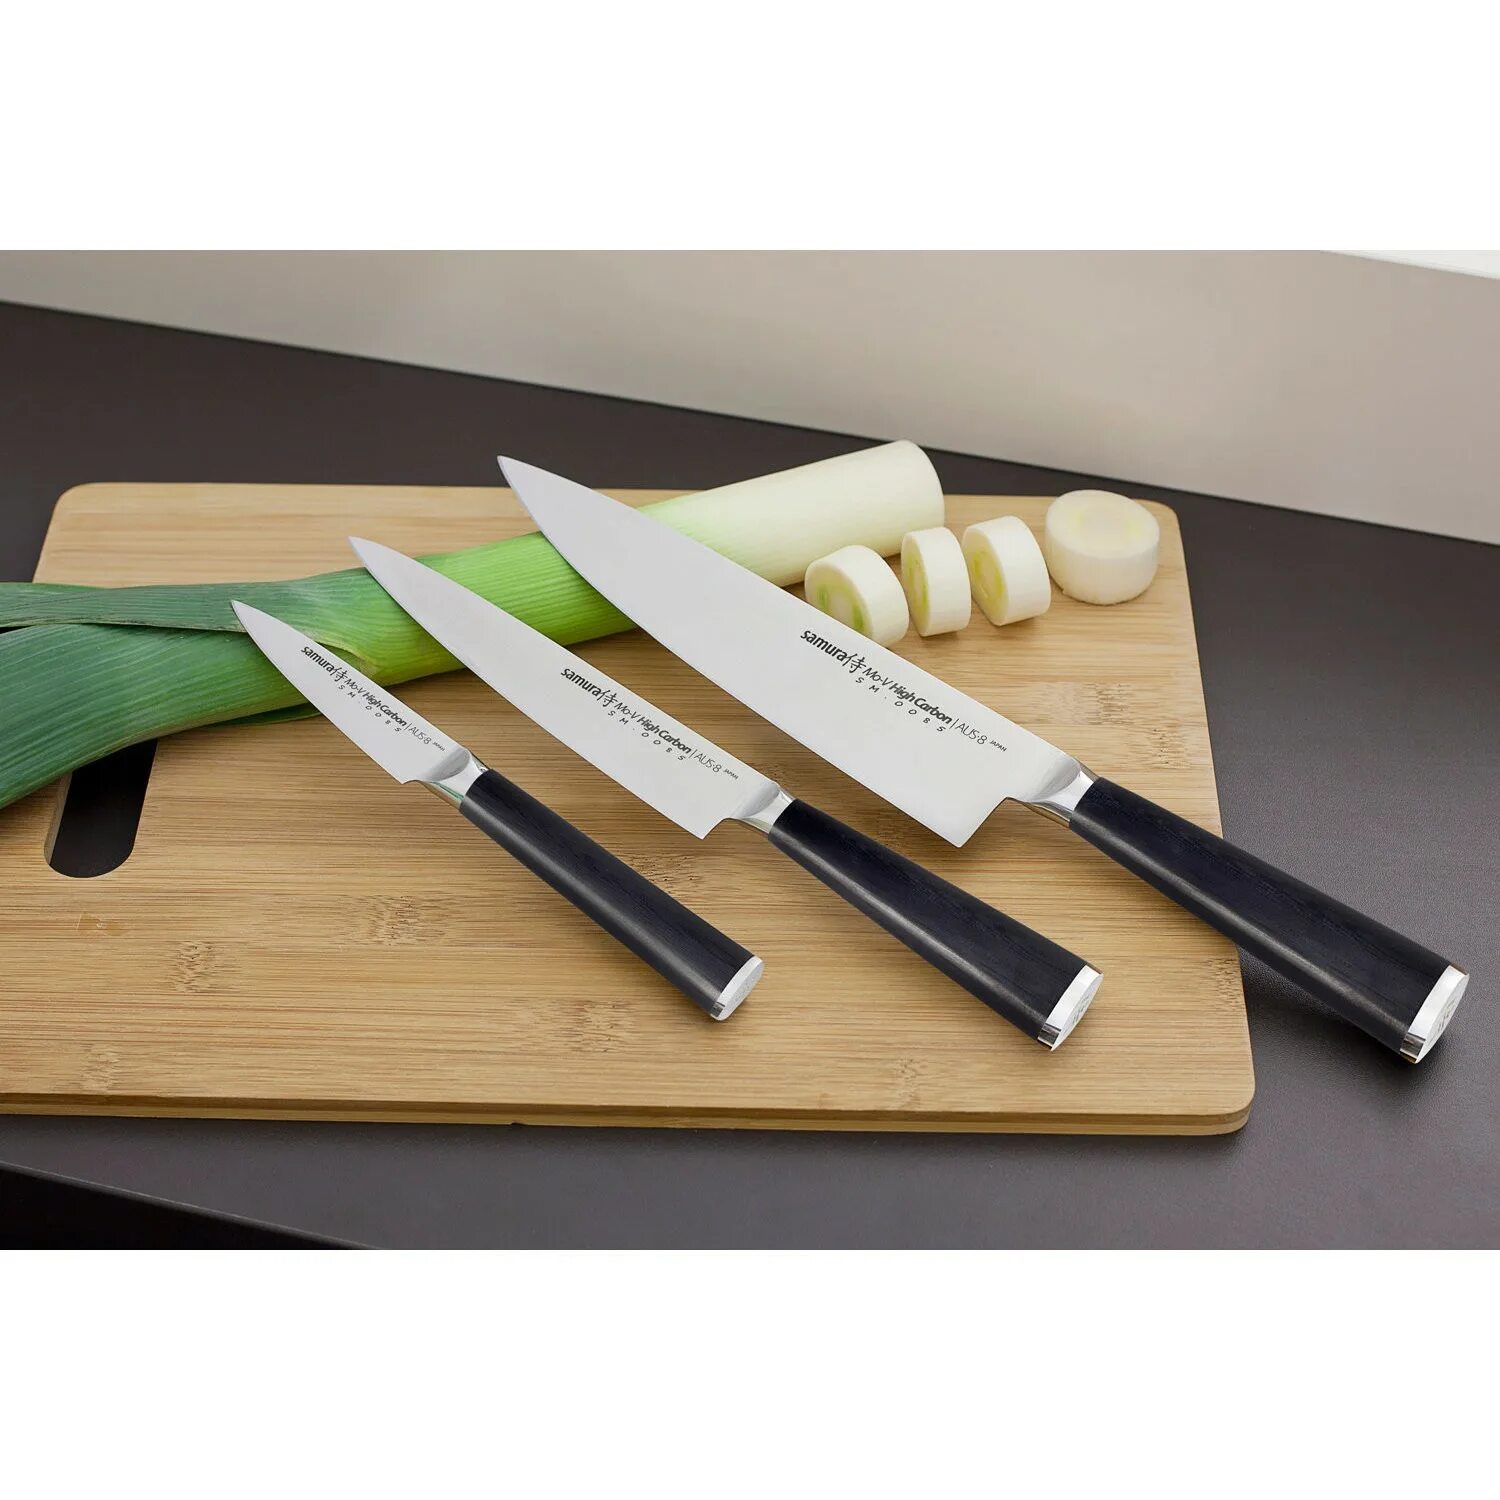 Японские ножи Самура. Японские кухонные ножи Самура. Ножи японские кухонные Samura. Нож поварской Samura. Набор поварских ножей